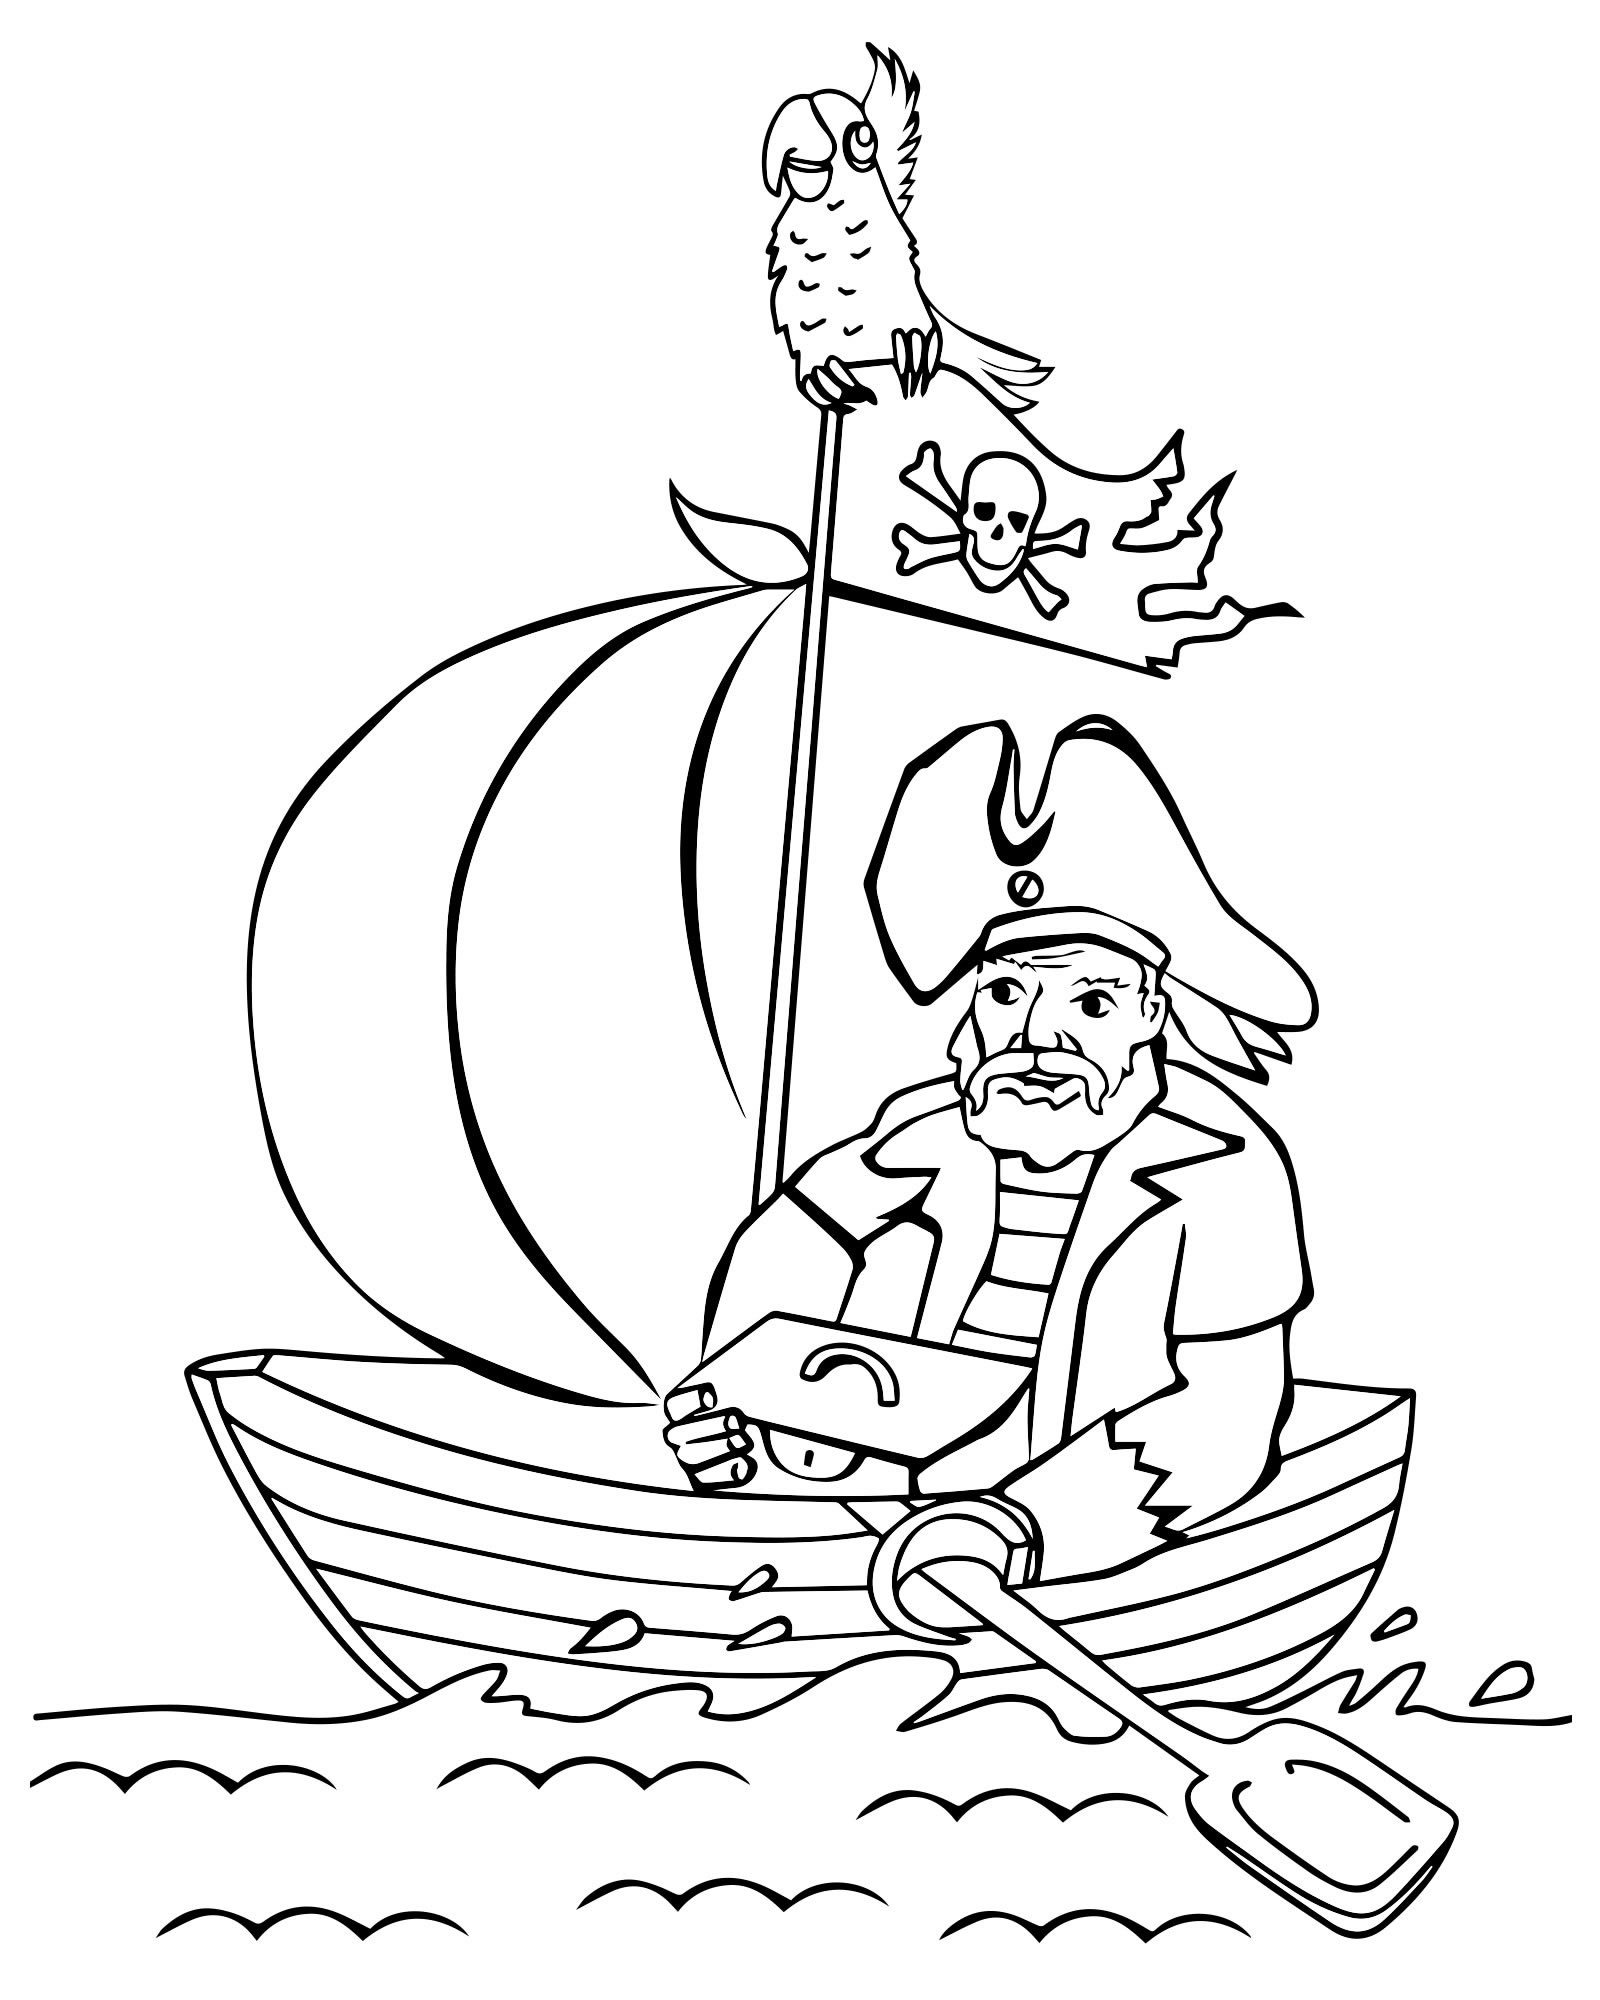 Пират с кладом раскраска для детей